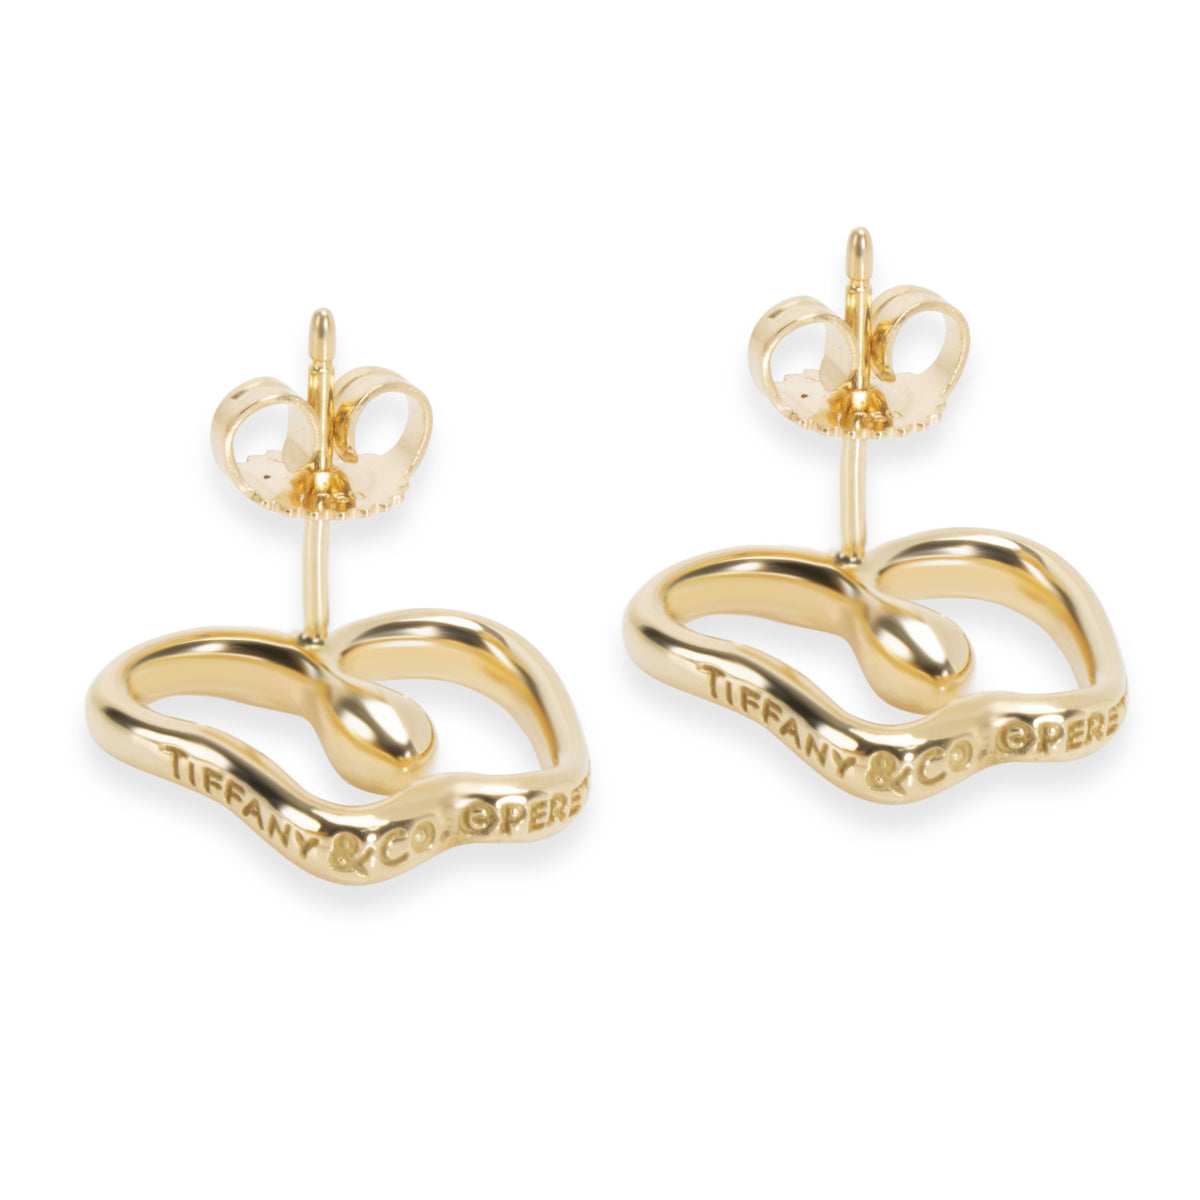 Tiffany & Co. Elsa Peretti Apple Earrings in 18K Yellow Gold